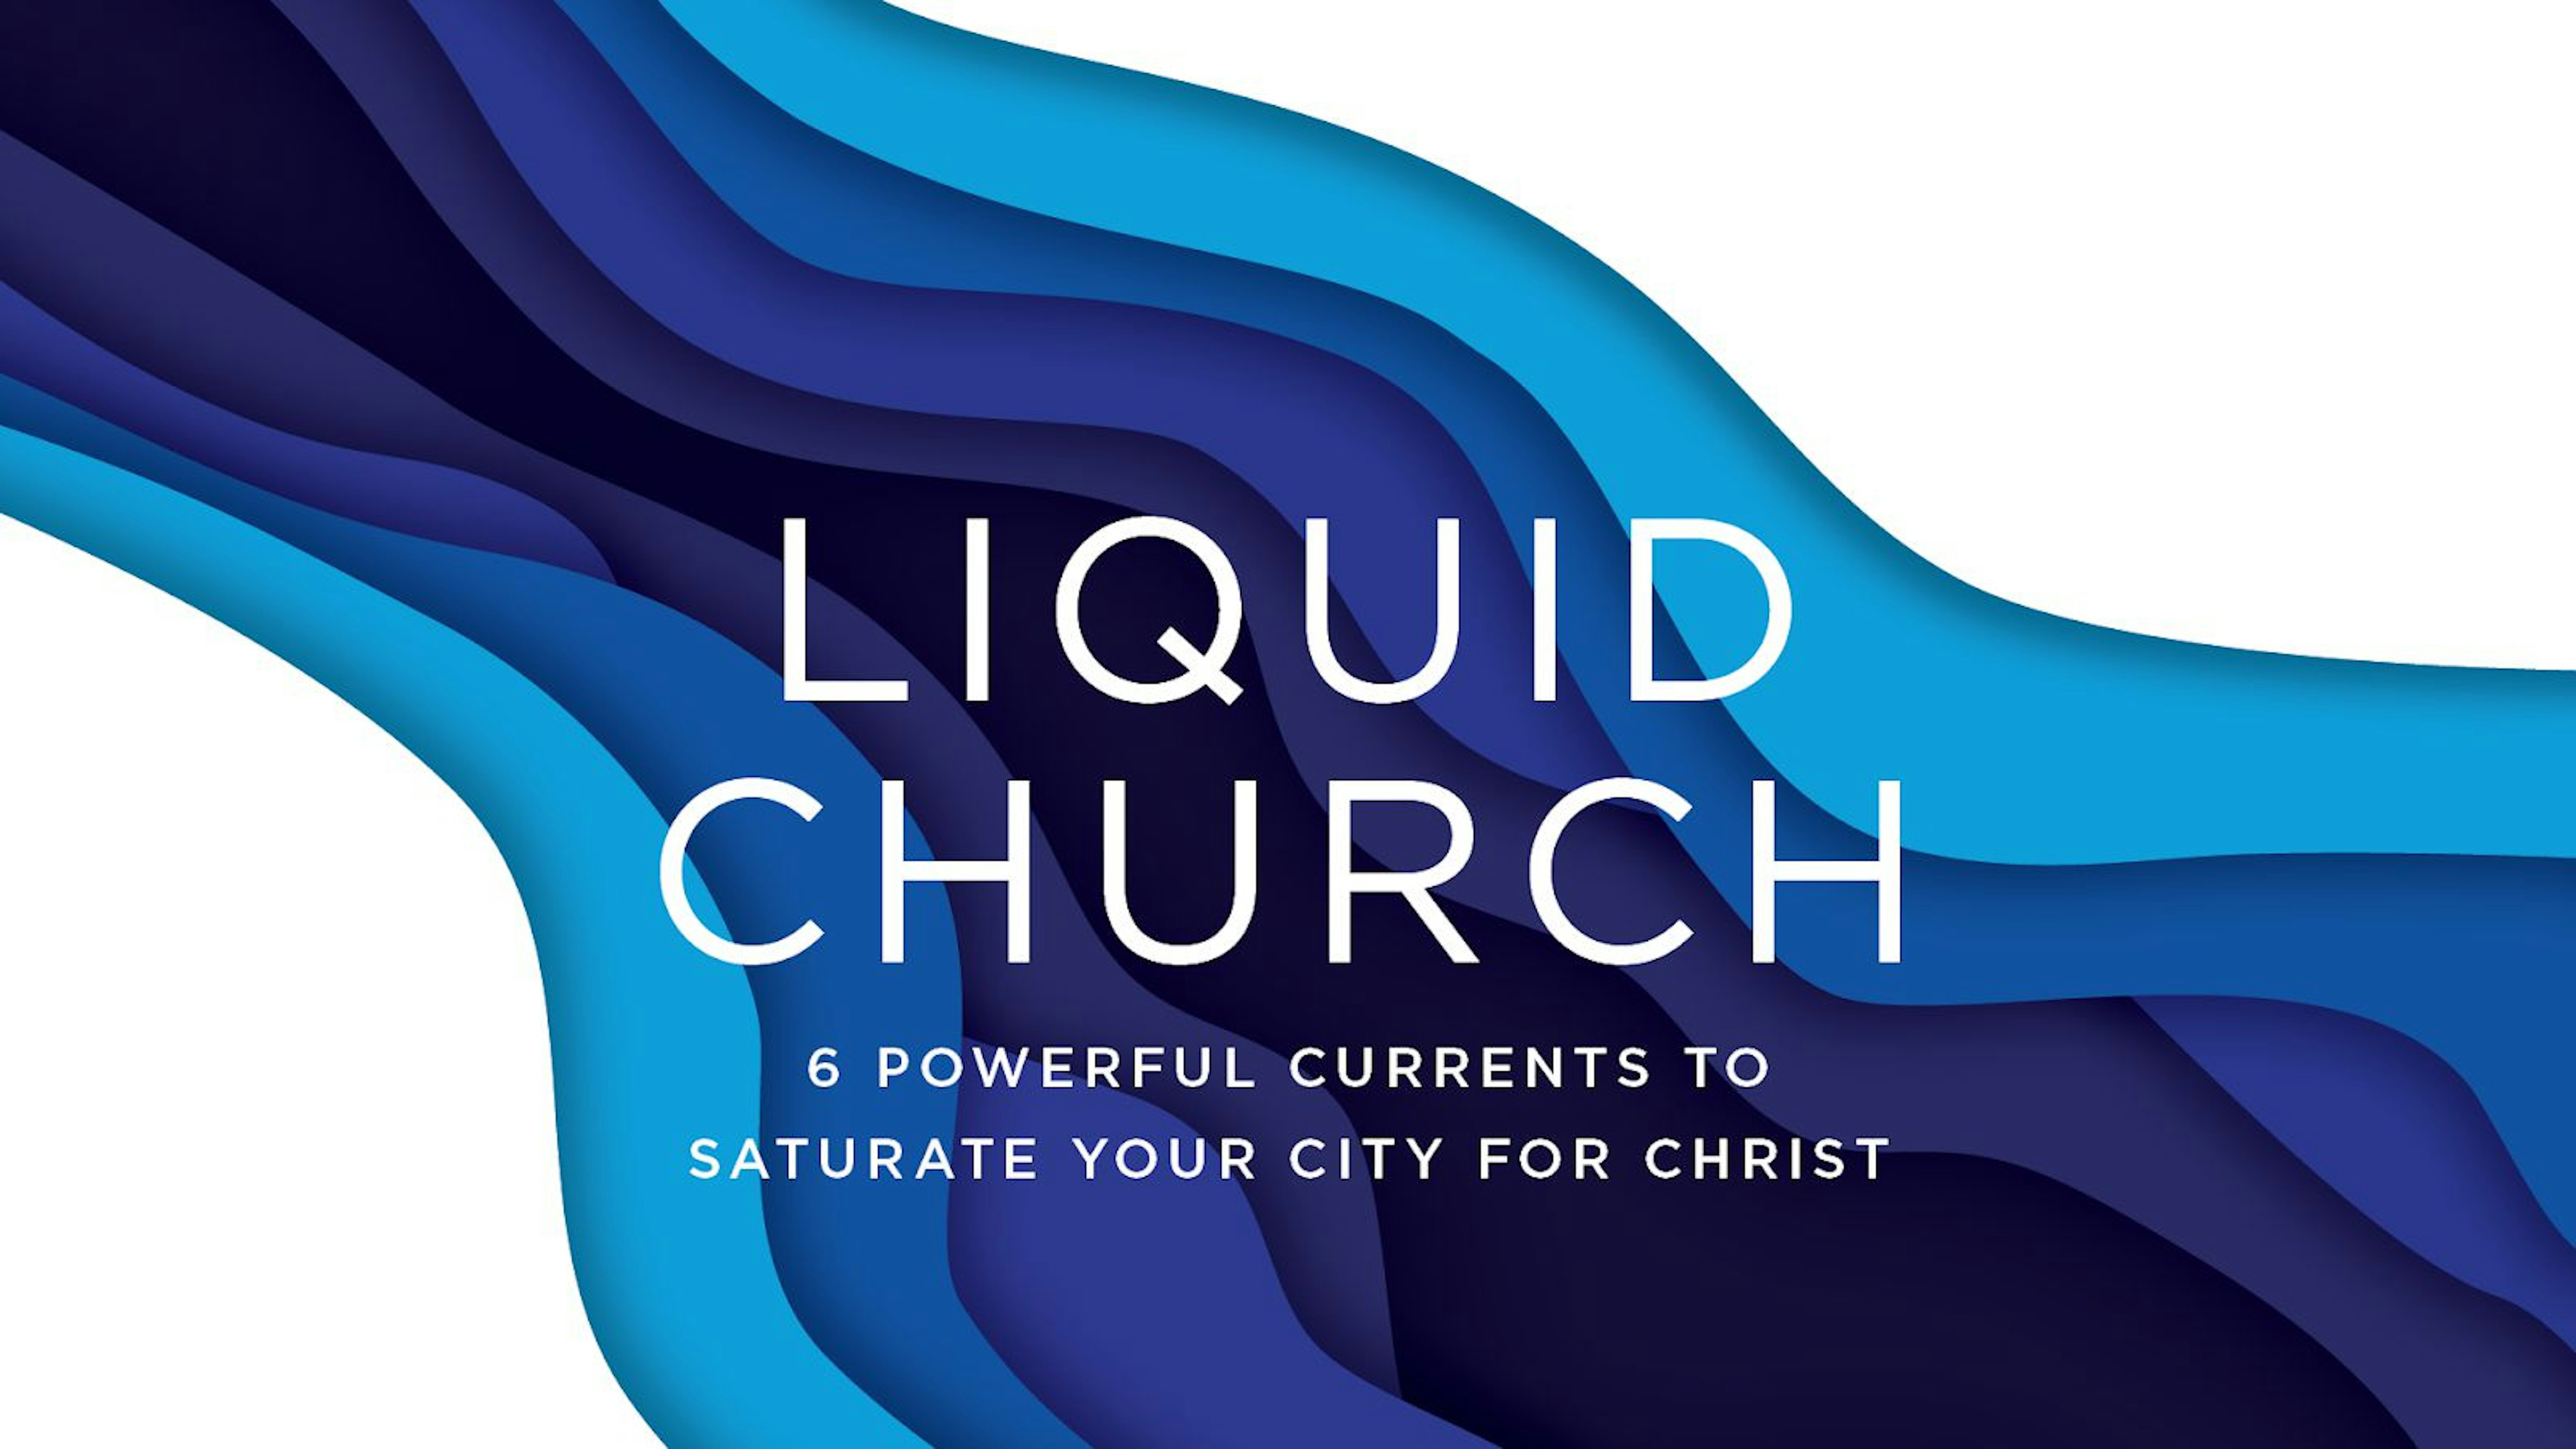 Liquid Church Liquid Church